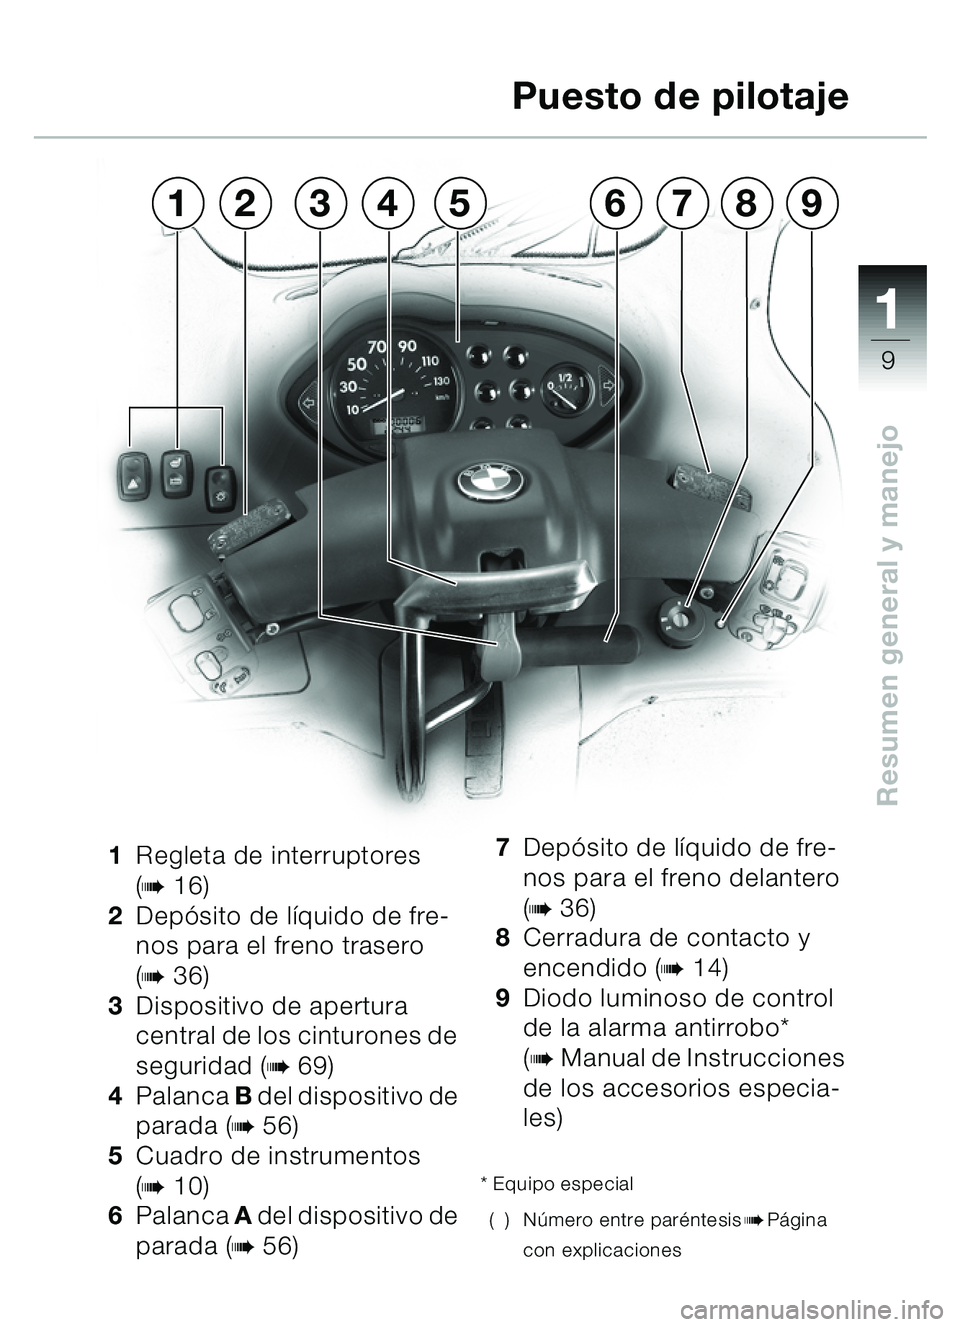 BMW MOTORRAD C1 2000  Manual de instrucciones (in Spanish) 111
9
Resumen general y manejo
1Regleta de interruptores 
(
b16)
2 Depó sito de l íquido de fre-
nos para el freno trasero 
(
b36)
3 Dispositivo de apertura 
central de los cinturones de 
seguridad 